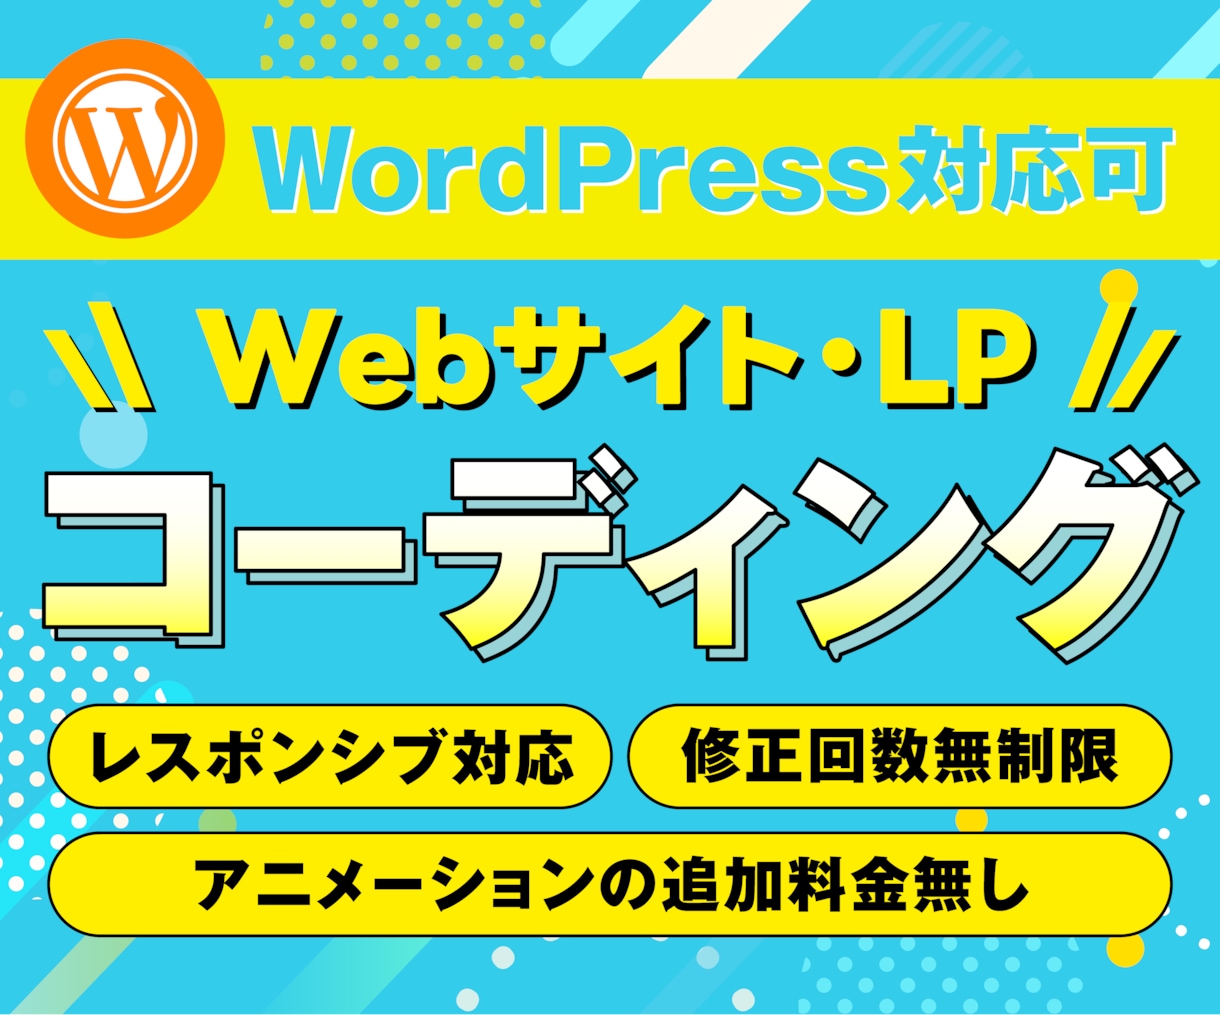 💬Coconara｜Coding websites and LPs Inaro｜Web Coder 4.9…